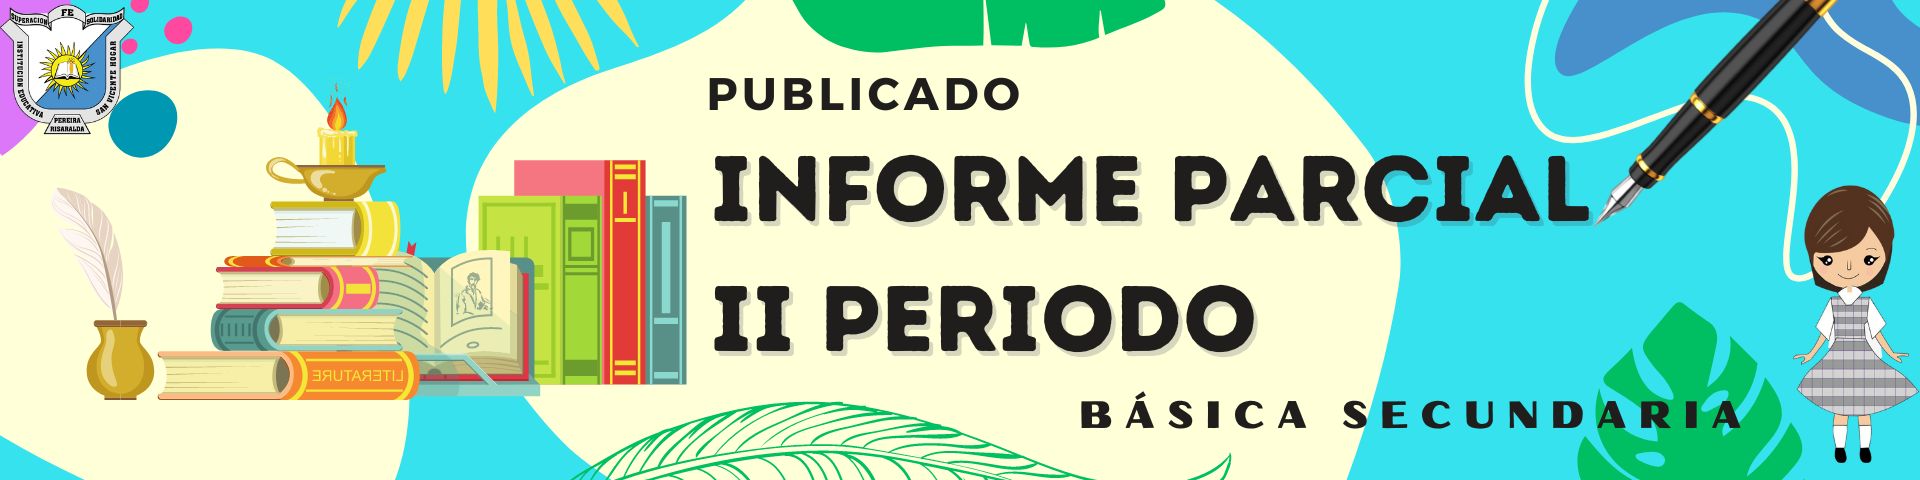 INFORME PARCIAL II PERIODO BÁSICA SECUNDARIA